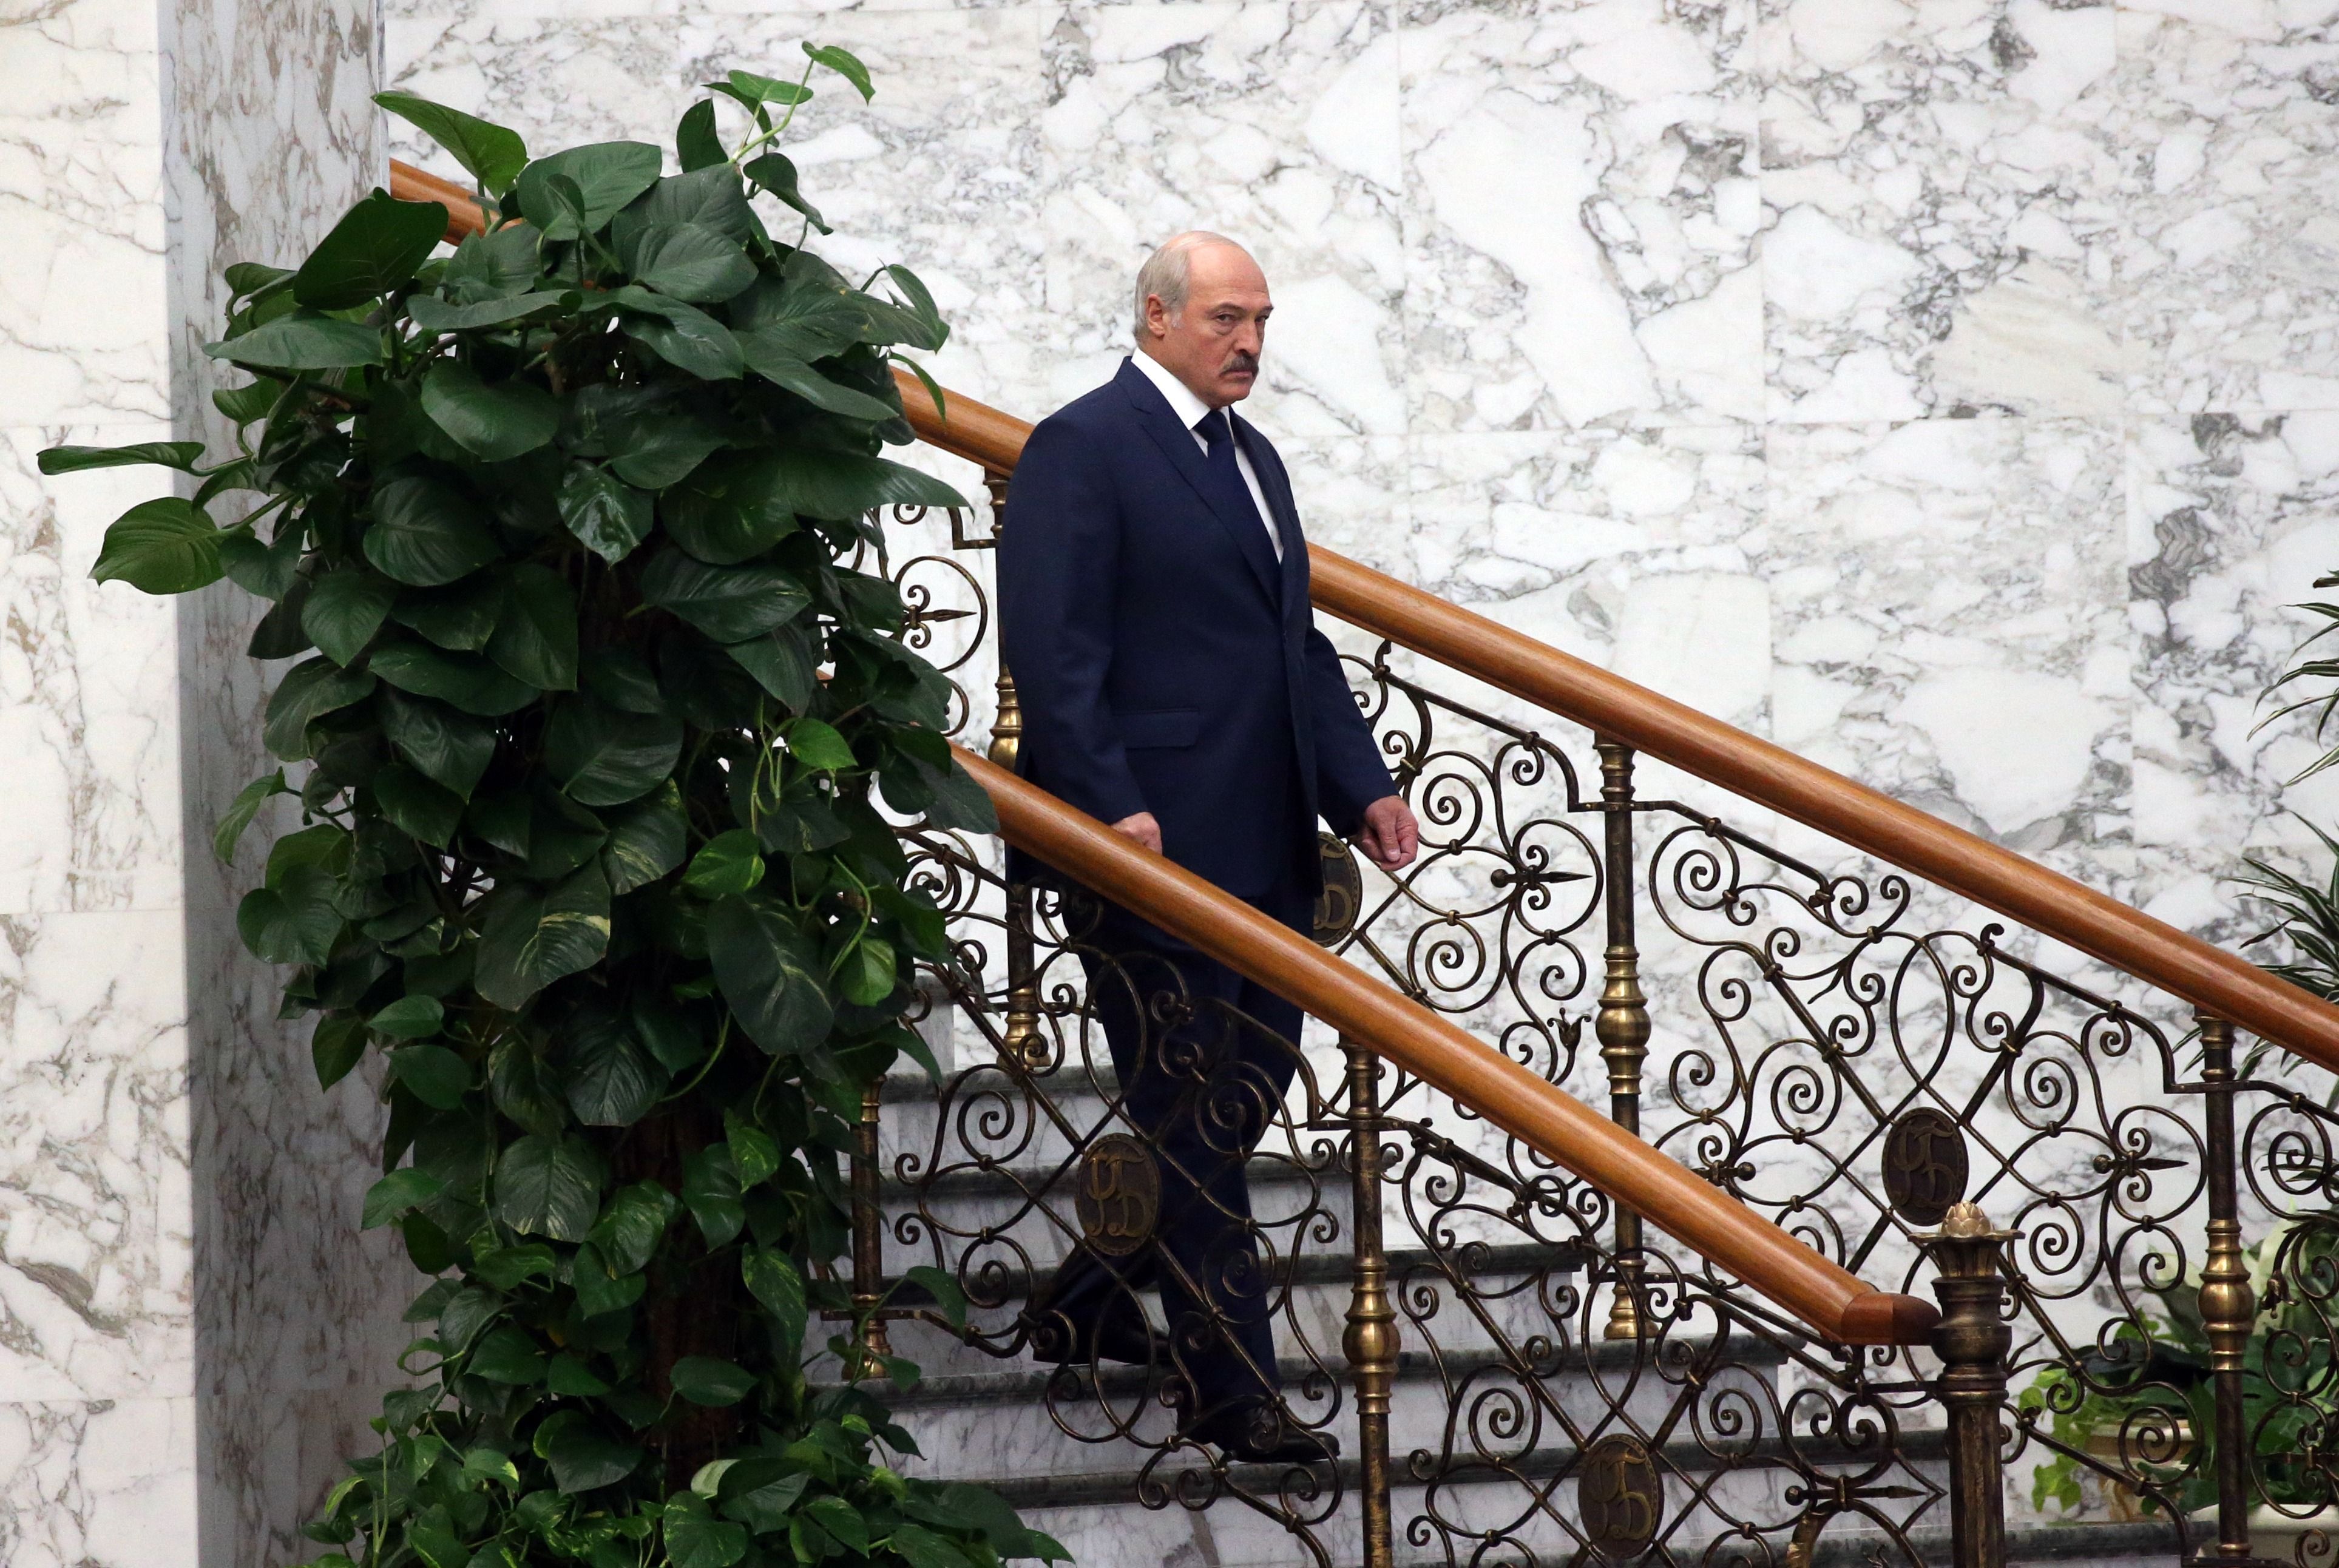 Лукашенко розгублений, – Латушко про абсурдні заяви самопроголошеного президента - 24 Канал